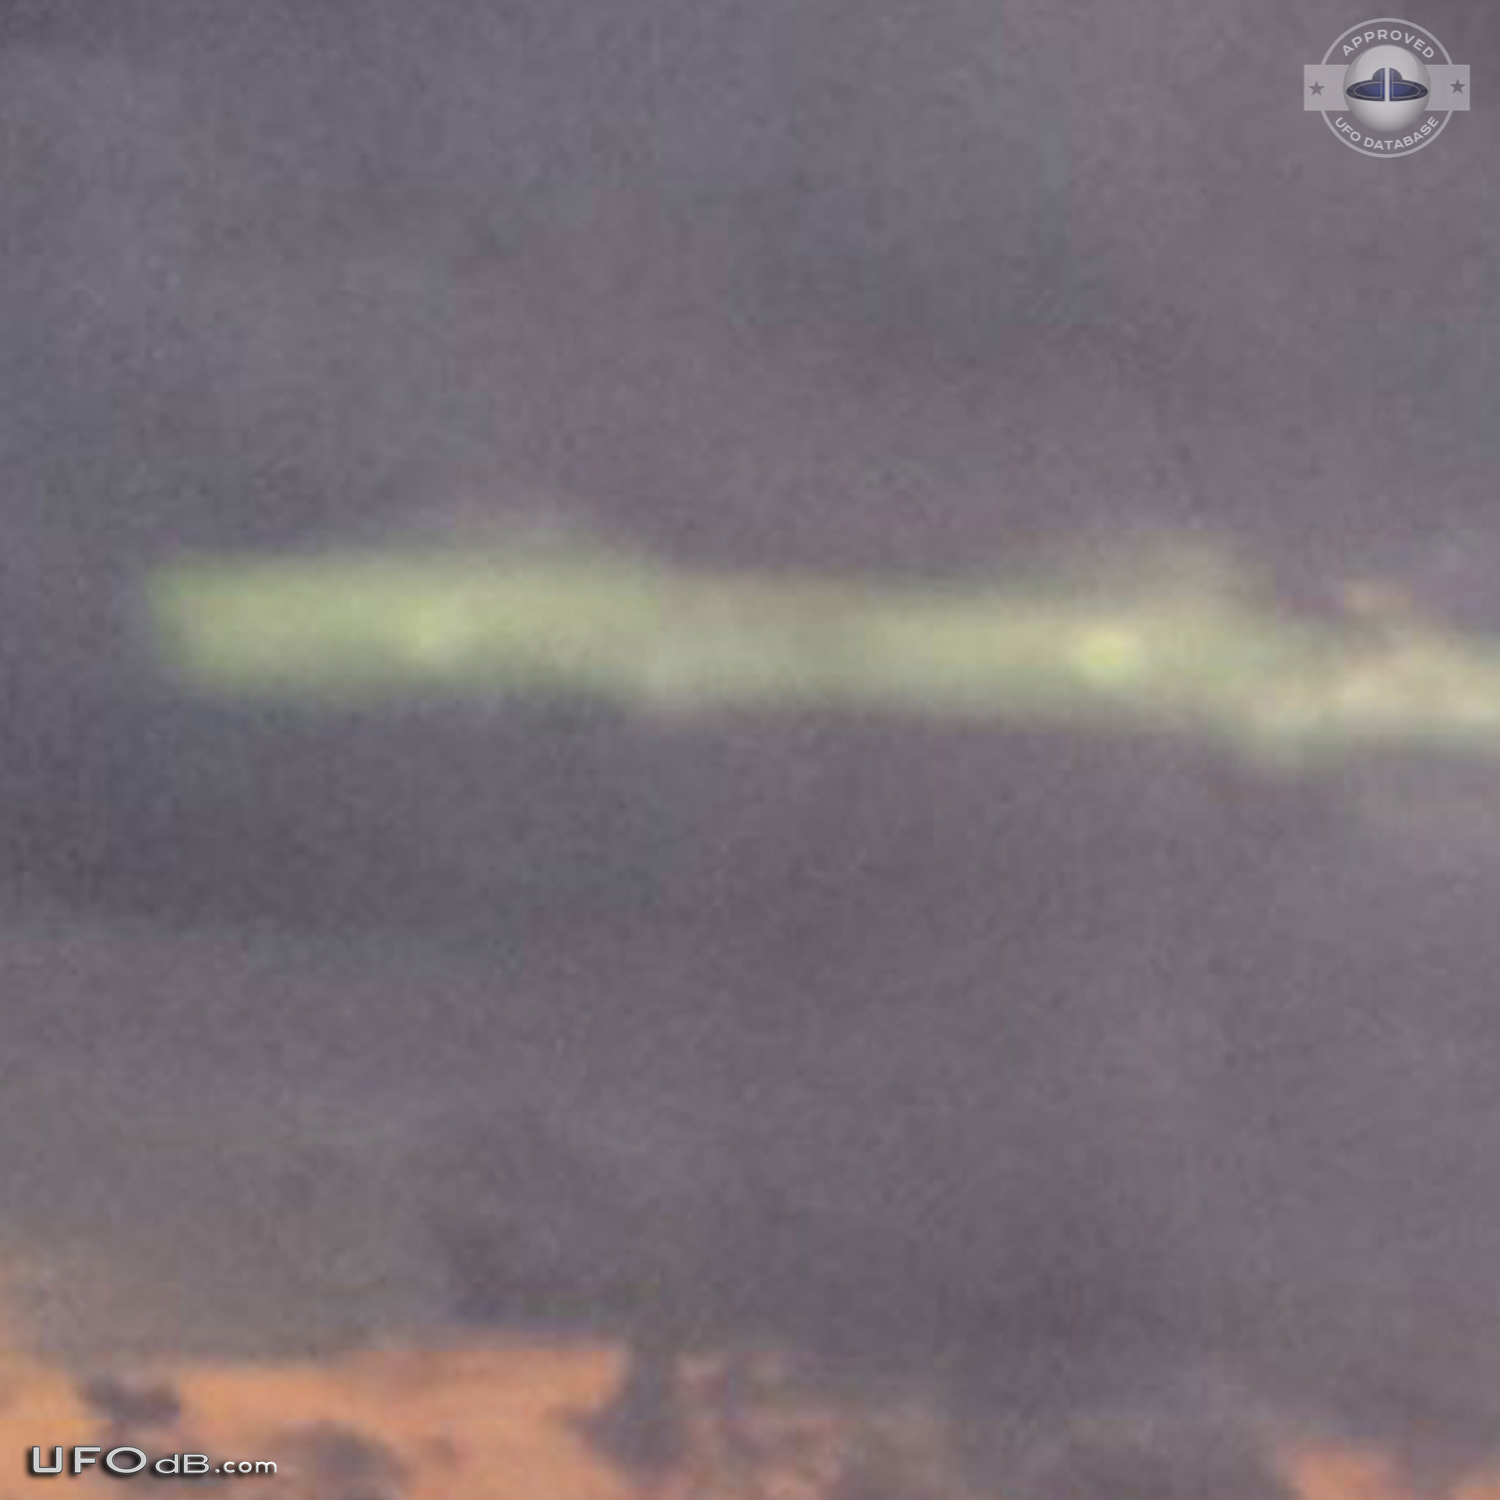 Strange UFO in the sky near Guantanamo prison, Cuba in 2015 UFO Picture #618-4